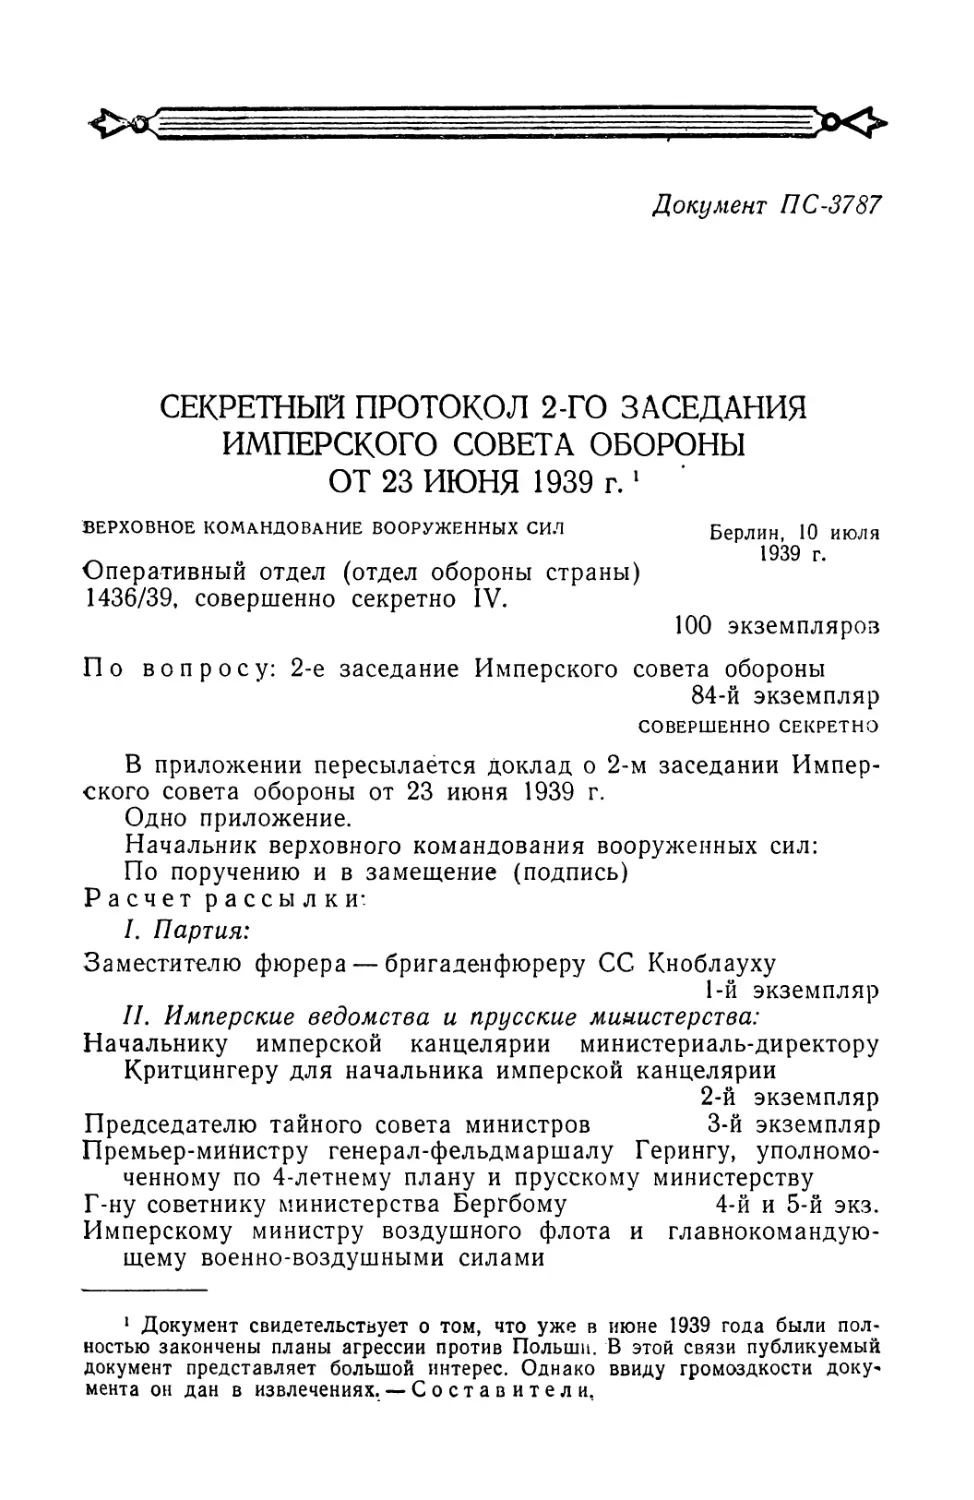 Секретный протокол 2-го заседания имперского совета обороны от 23 июня 1939 г.